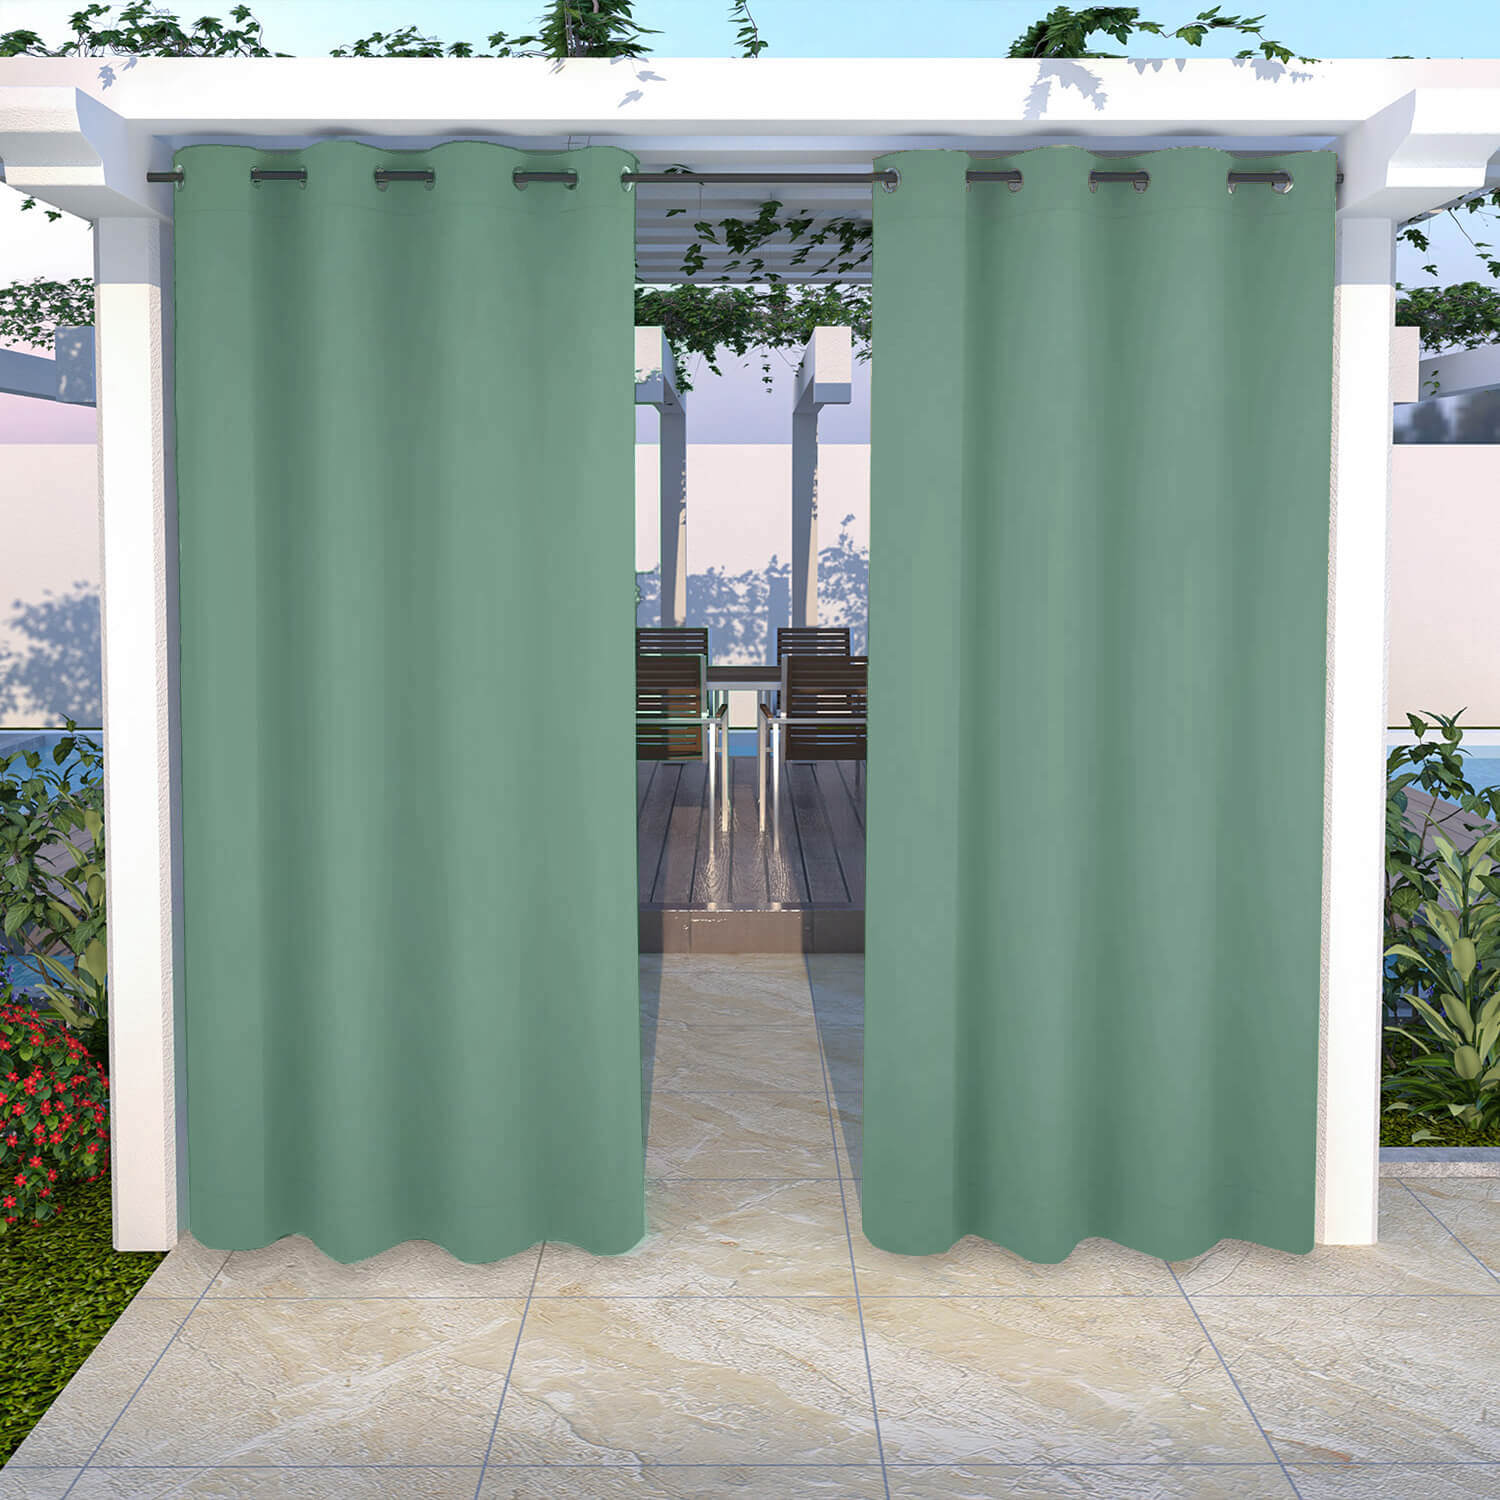 Snowcity Outdoor Curtains Waterproof Grommet Top 1 Panel - Green